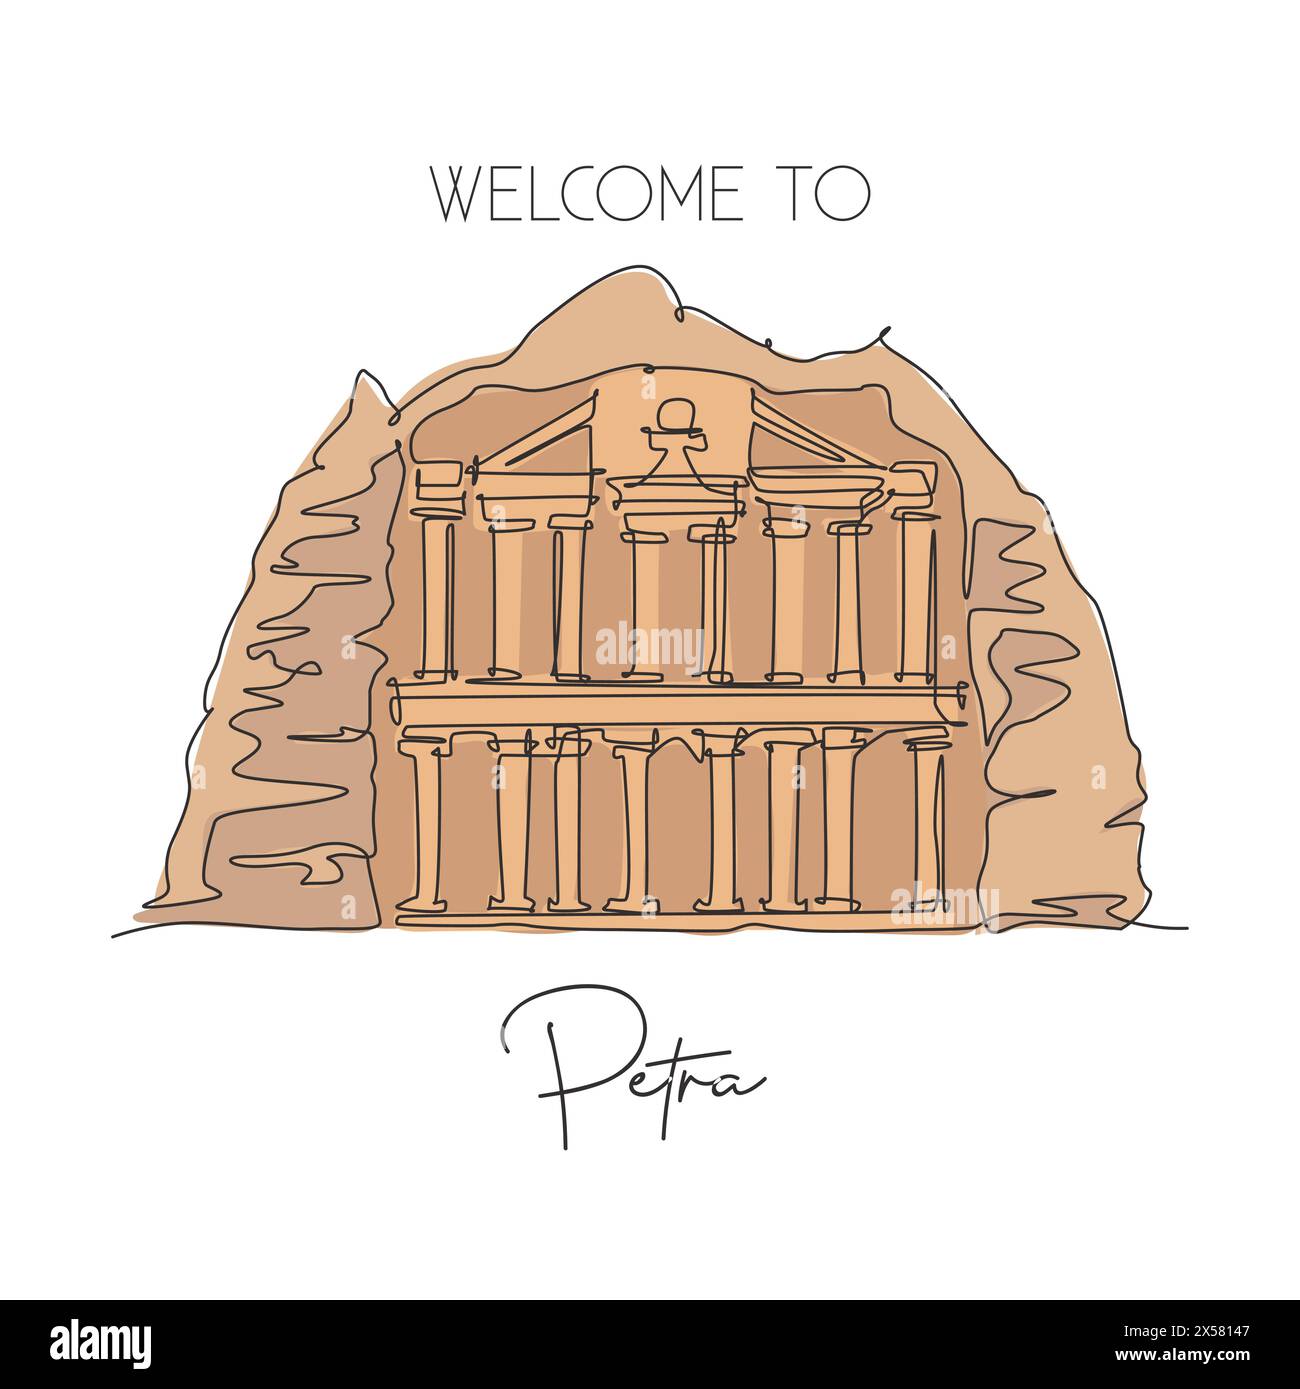 Eine einzelne Linie zeigt das Wahrzeichen des alten Tempels Al Khazneh Petra. Berühmter Ort in Jordanien. Tourismus Reise Postkarte Wohnwand Dekor Poster Art Konzept. Modus Stock Vektor